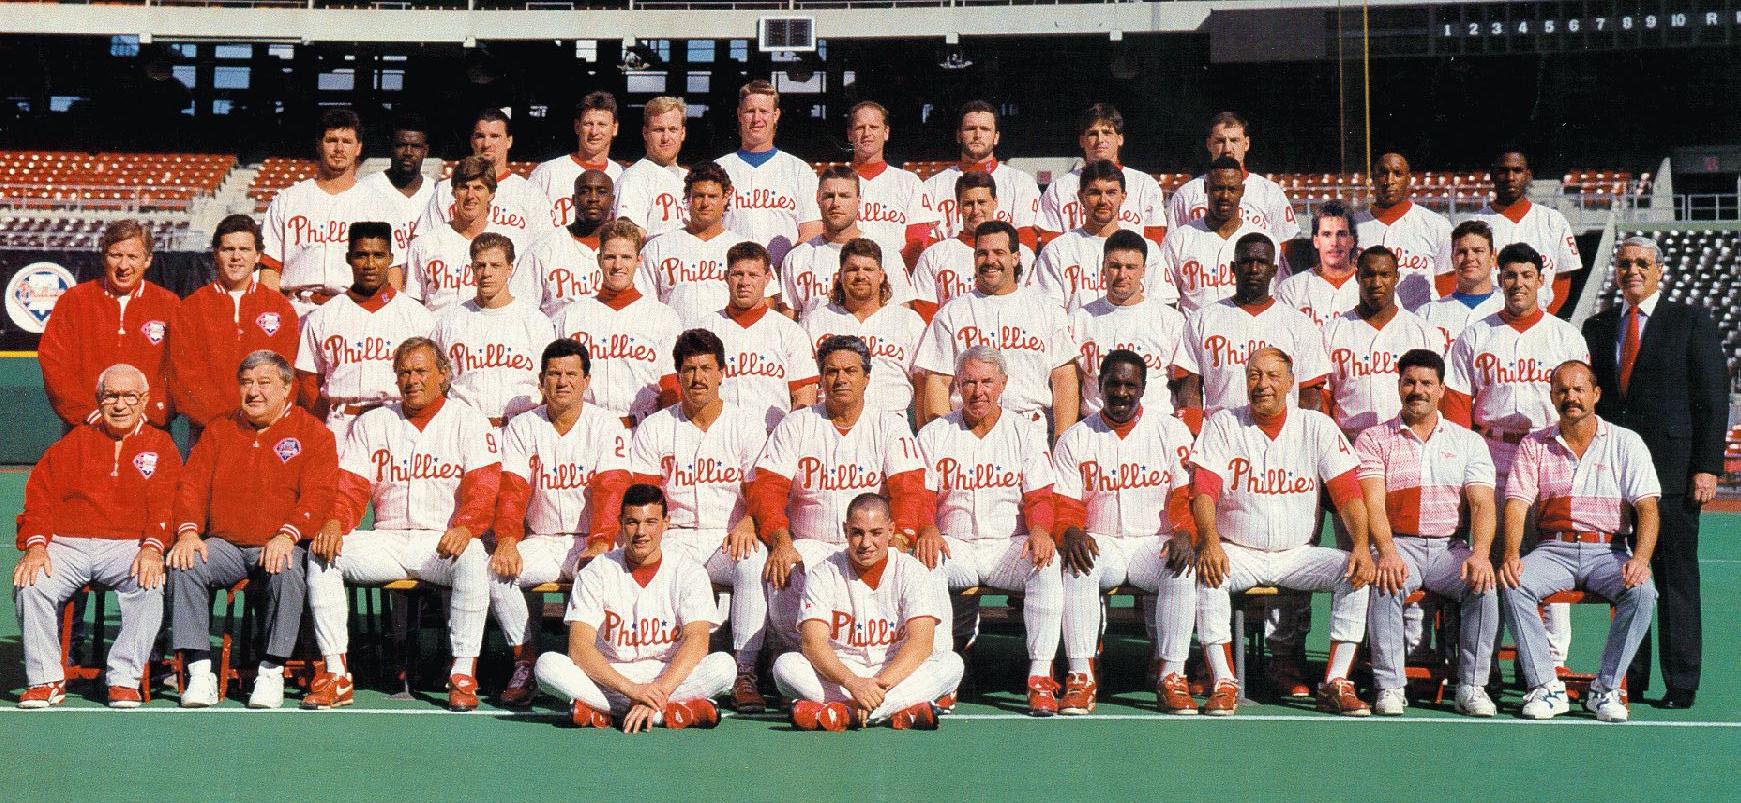 1993 phillies team - P Nlies Le! Per The Thield Sata Sie Phill 2 Phillie h i llies Phillie Phillie Thillie Phillies Ple Phone